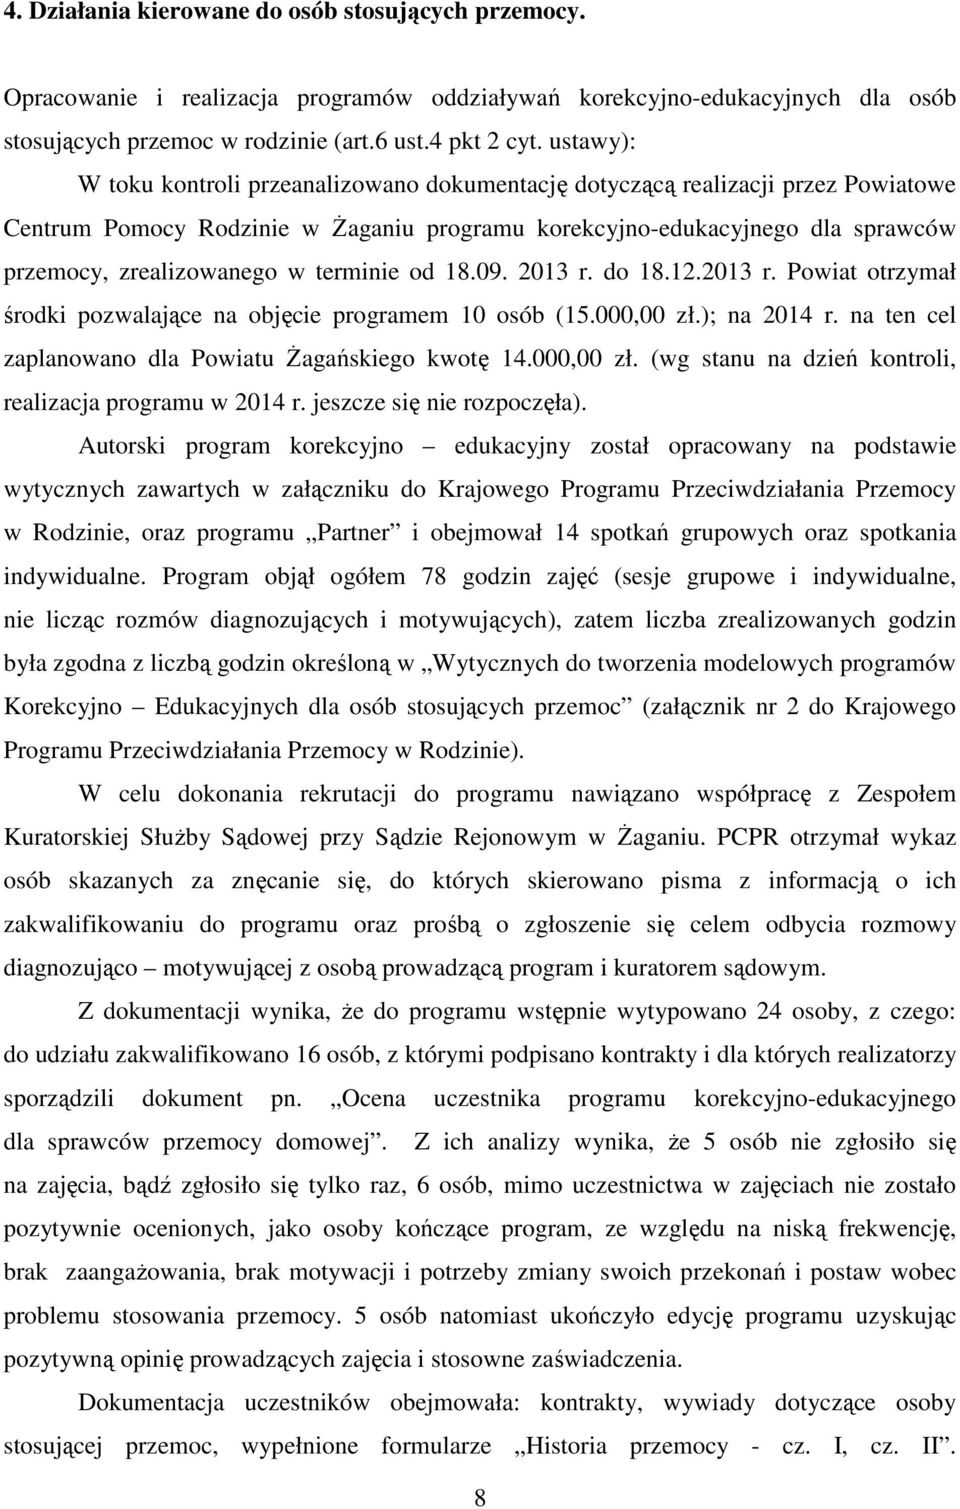 terminie od 18.09. 2013 r. do 18.12.2013 r. Powiat otrzymał środki pozwalające na objęcie programem 10 osób (15.000,00 zł.); na 2014 r. na ten cel zaplanowano dla Powiatu Żagańskiego kwotę 14.